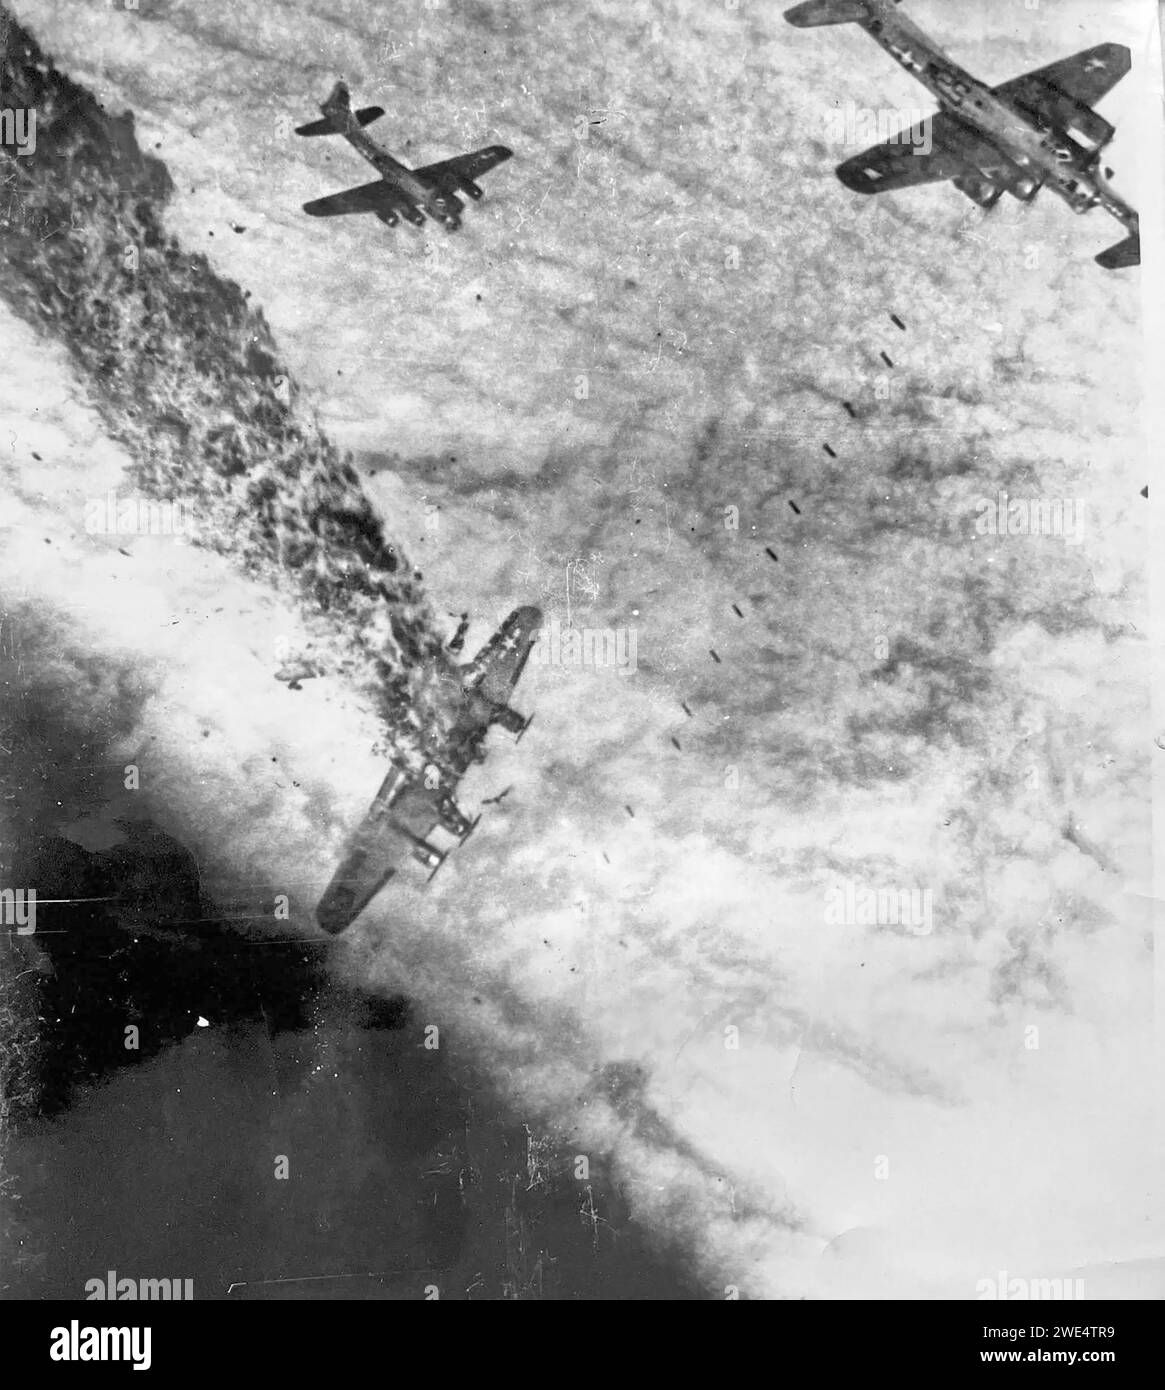 DIE BOEING B-17G der USAAF 834th Bombardment Squadron, die von der RAF Sudbury aus in England fliegt, trifft am 2. November 1944 direkt von Flak auf einer Mission über Deutschland. Die anderen Flugzeuge werfen Bomben durch die Wolke, nachdem das Ziel durch den Hauptbomber angepasst wurde. Foto von S/Sgt Bill Stewart aus seinem Hüftfenster. Stockfoto